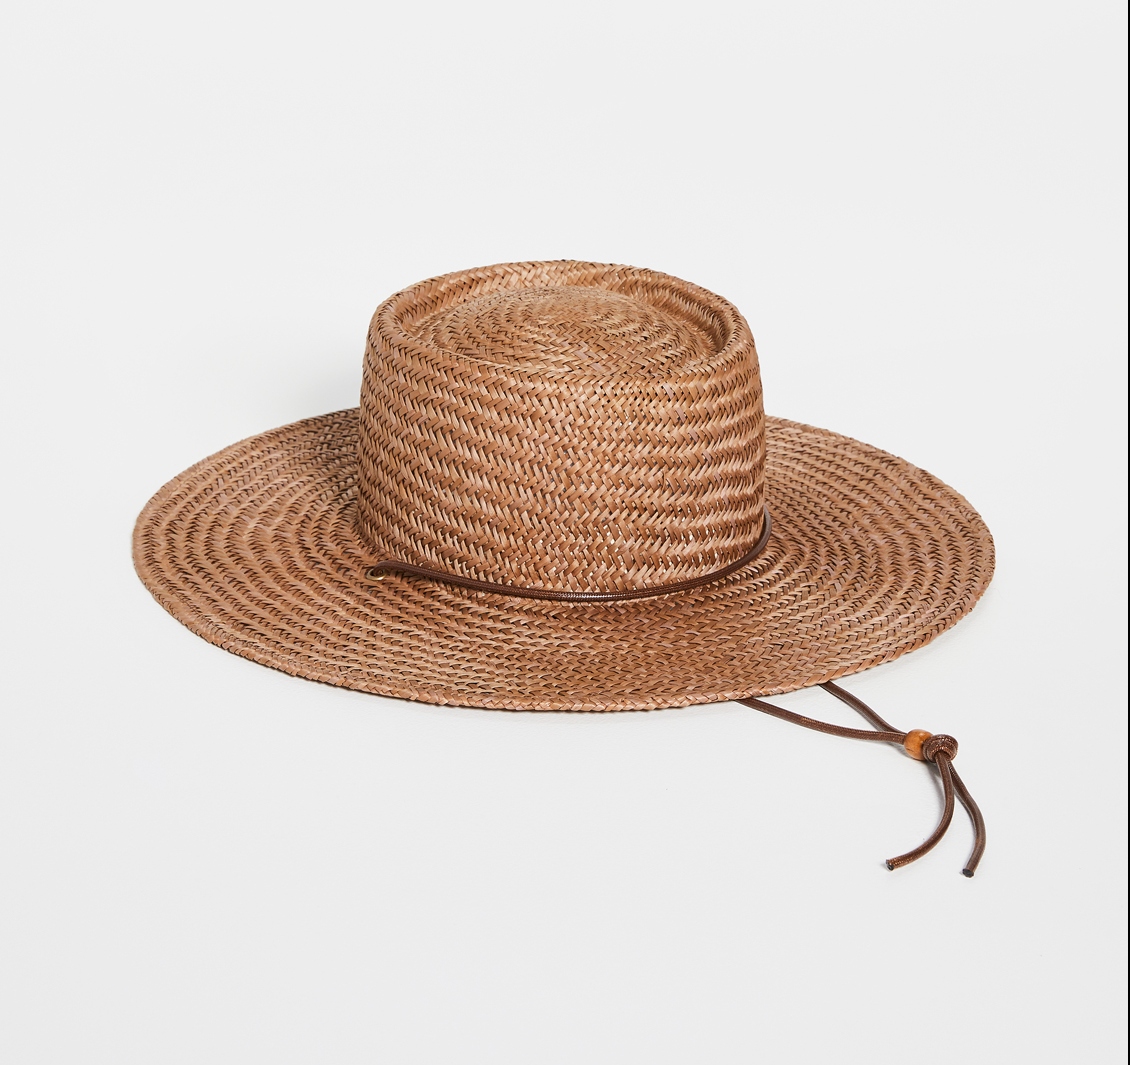 Lack of Color Vienna Hat on Shopbop Cute Summer Sun Hats for Your Wedding or Elopement Bridal Musings e1611861612683 - 25 chiếc mũ cô dâu mùa hè hợp thời trang cho chuyến đi của bạn Cottagecore